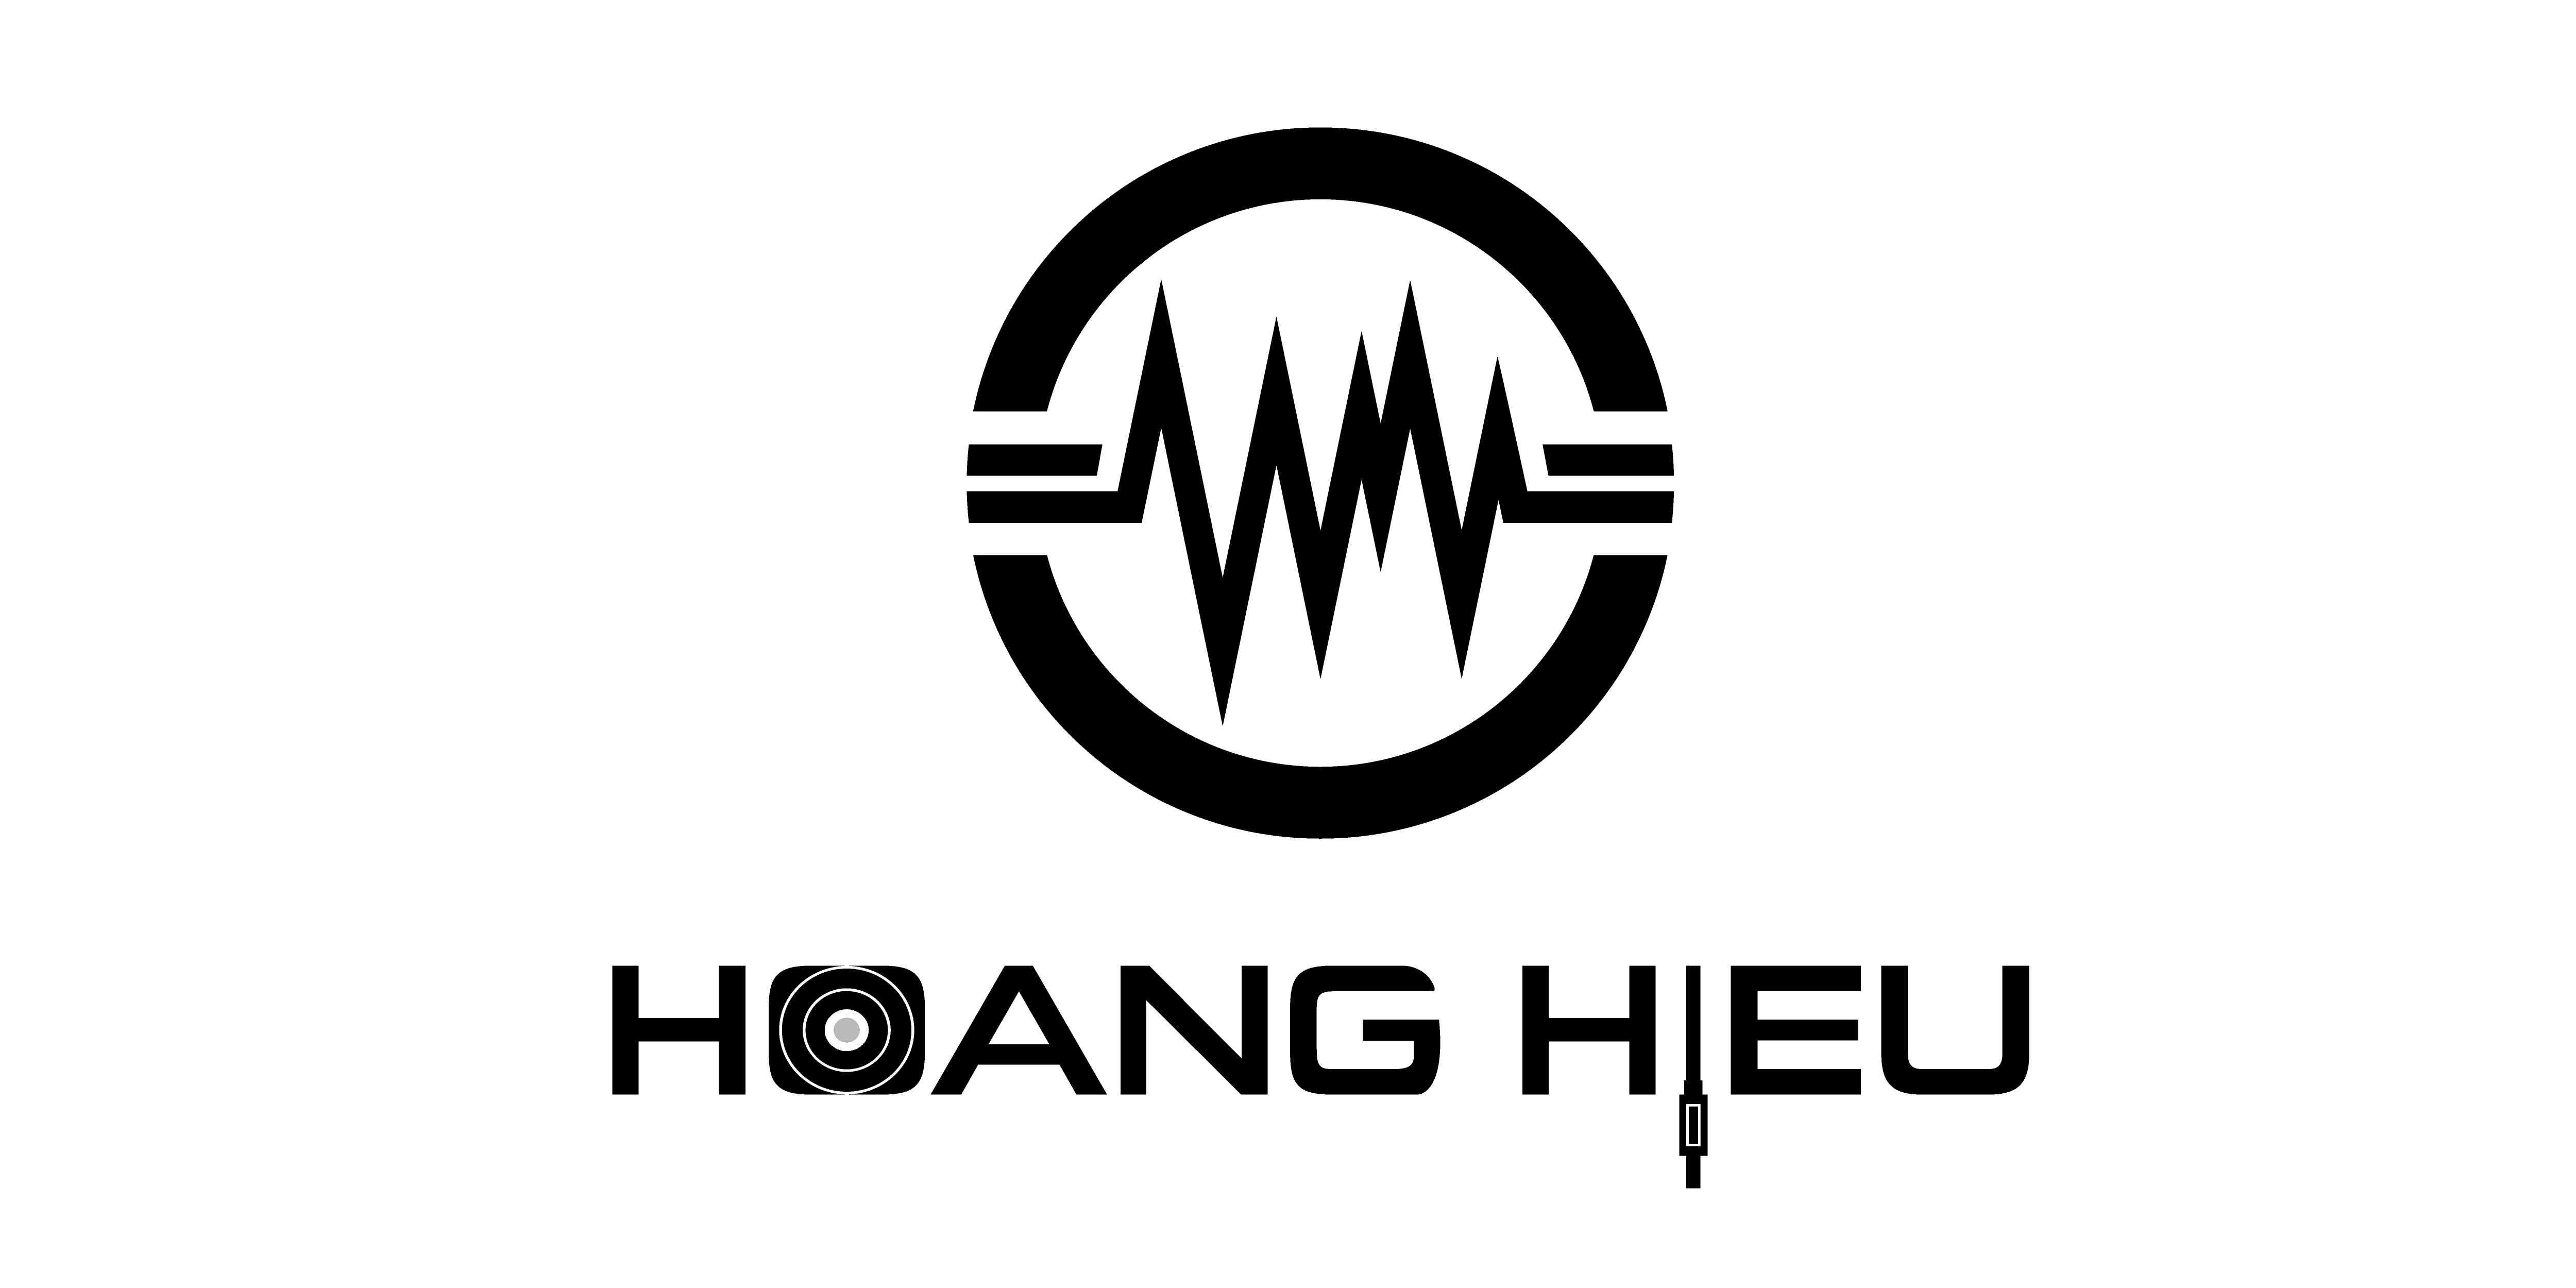 HoangHieu DJ